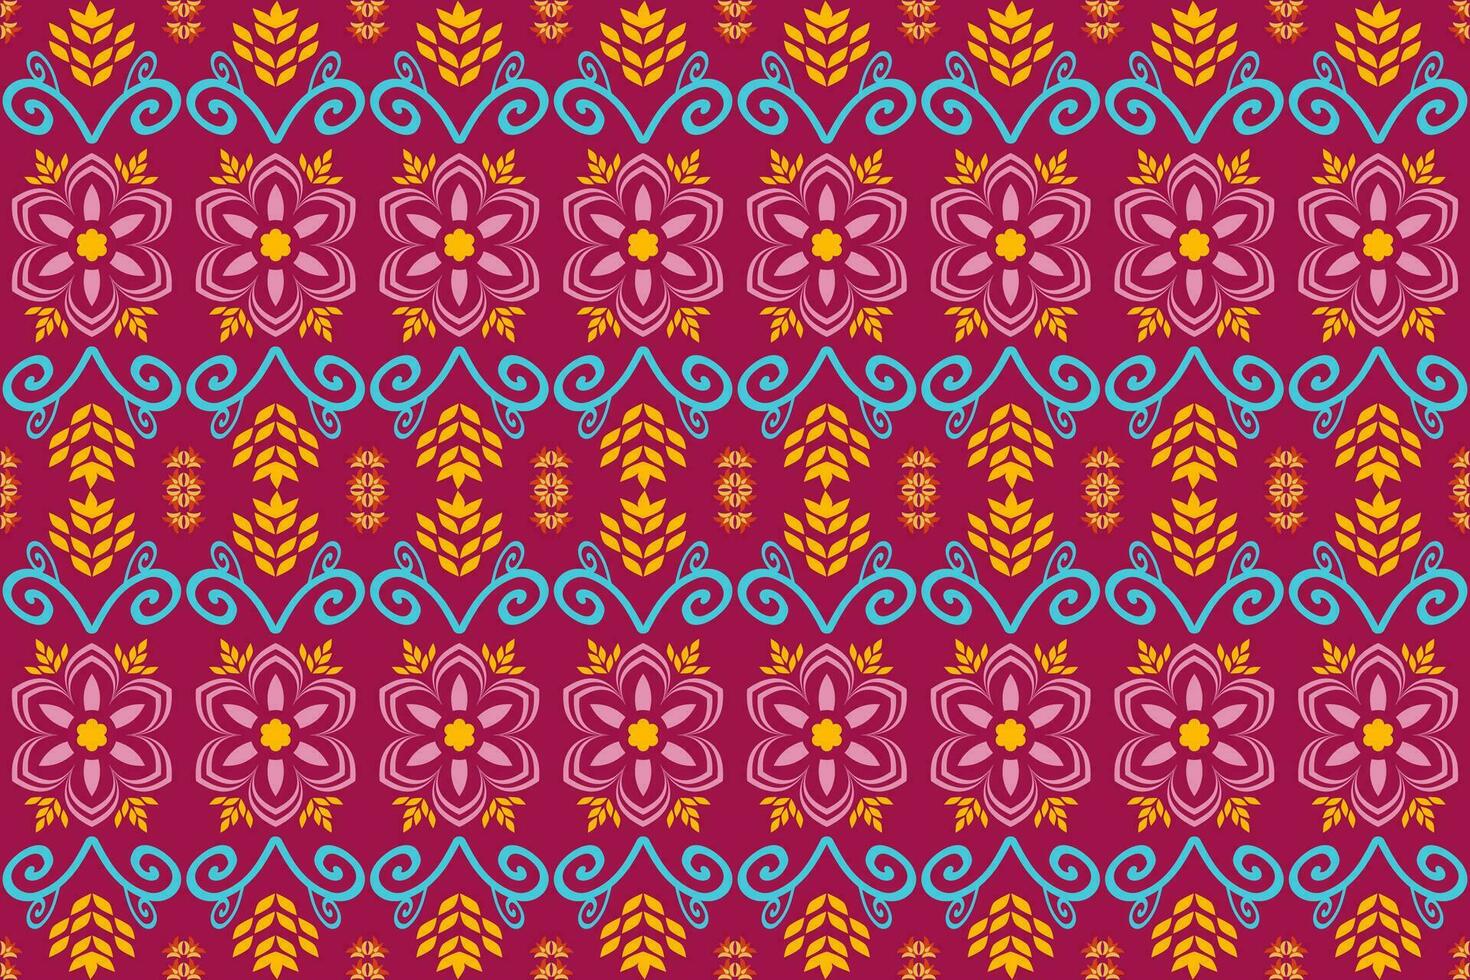 etnisch abstract ikat.mooi kleurrijk naadloos etnisch patroon.kleurrijk meetkundig borduurwerk voor textiel,stof,kleding,achtergrond,batik,gebreide kleding,mode vector